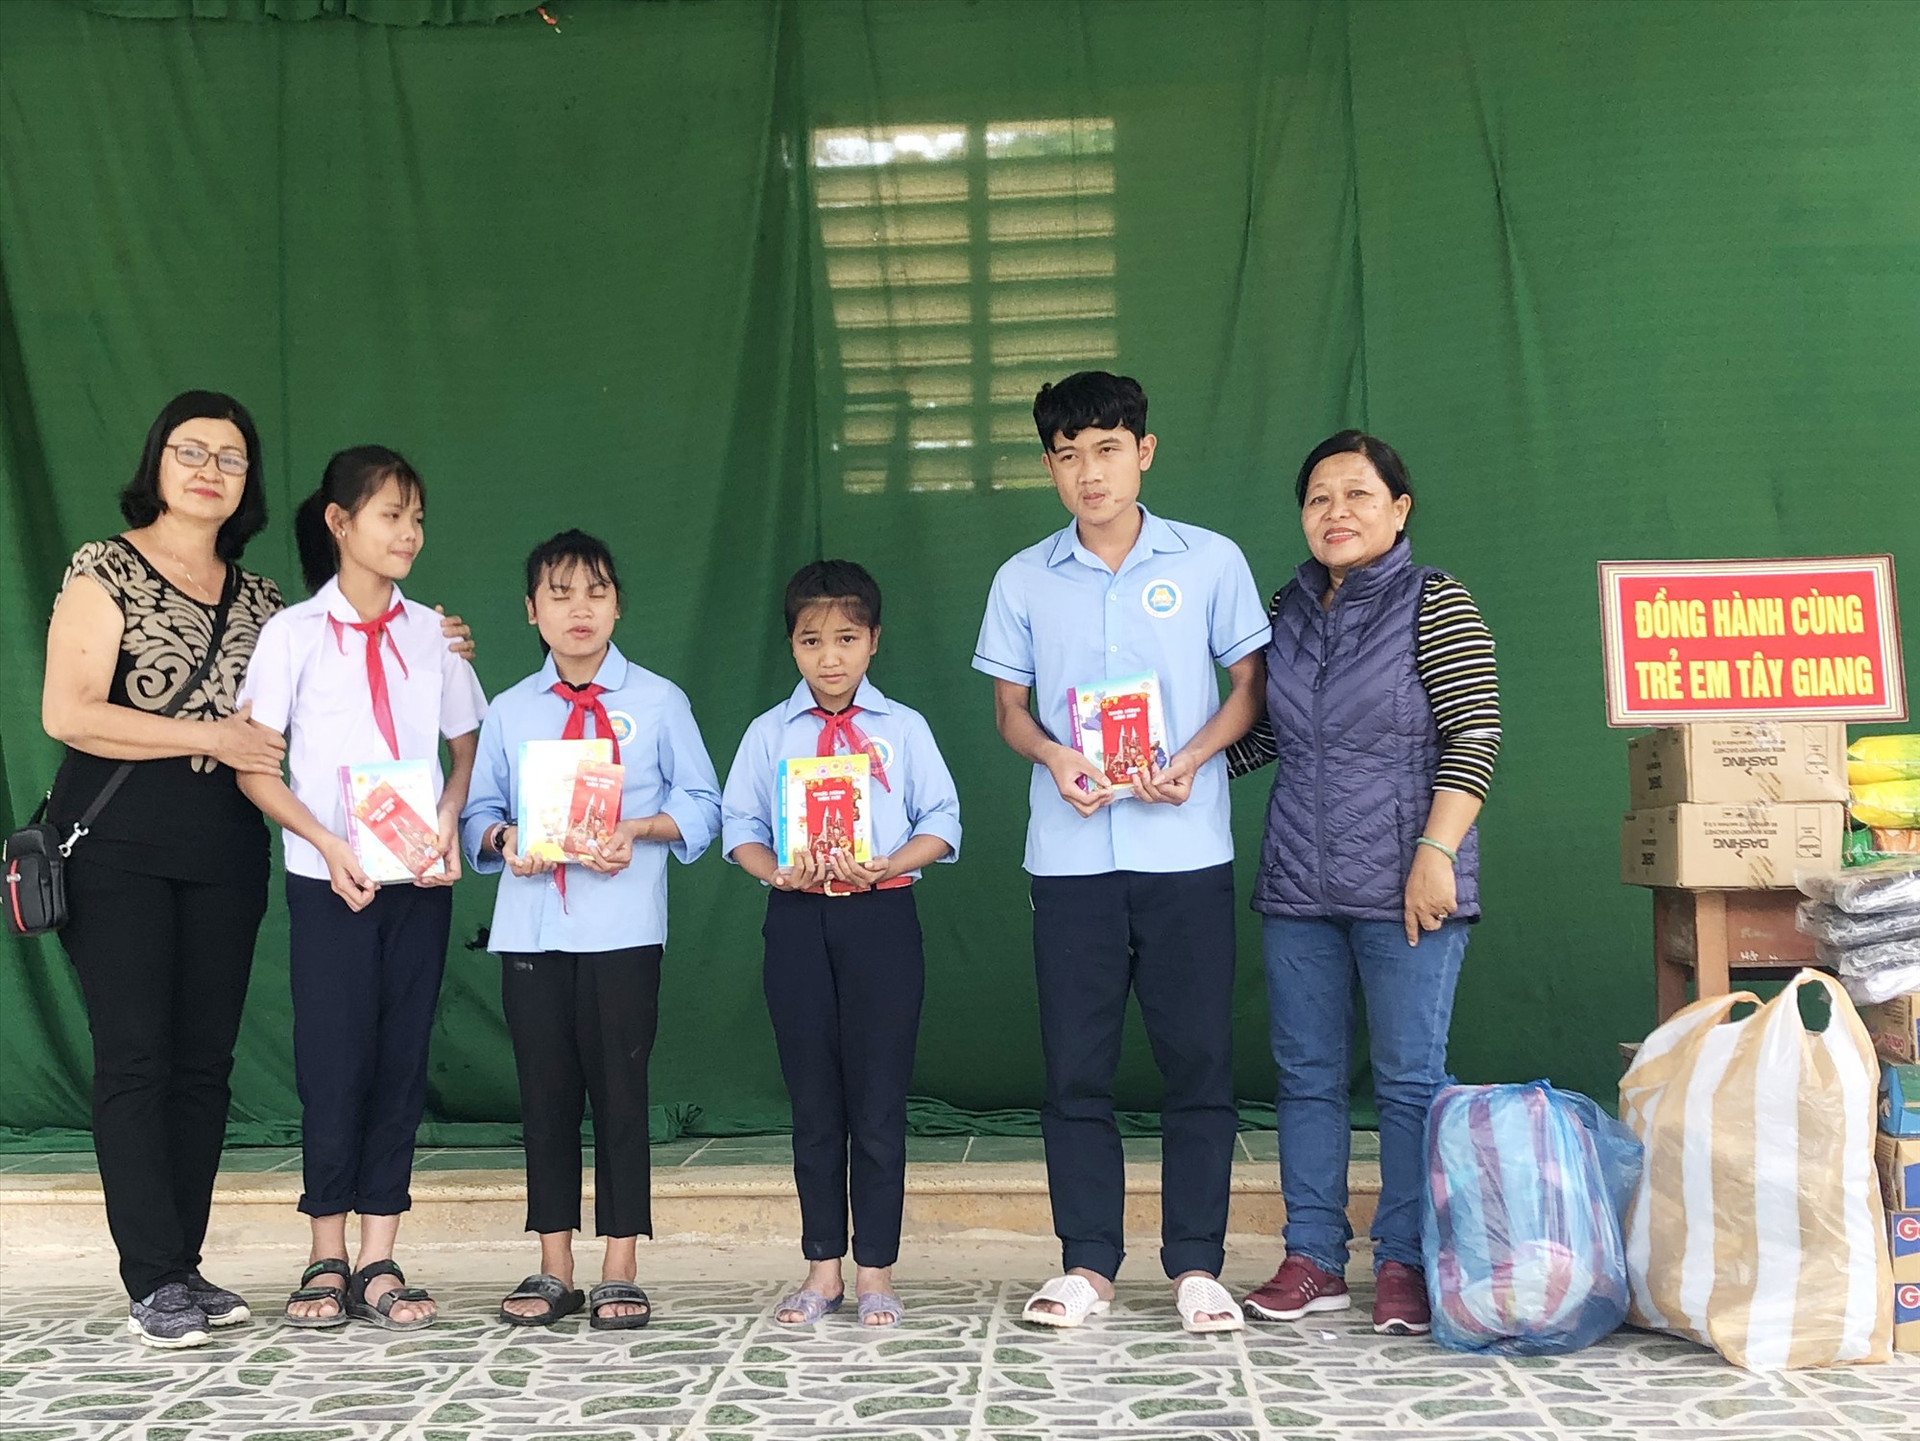 Bà Trương Thị Mỹ Nga (bìa phải) với học sinh vùng cao trong một số hoạt động thiện nguyện. Ảnh: Nhân vật cung cấp